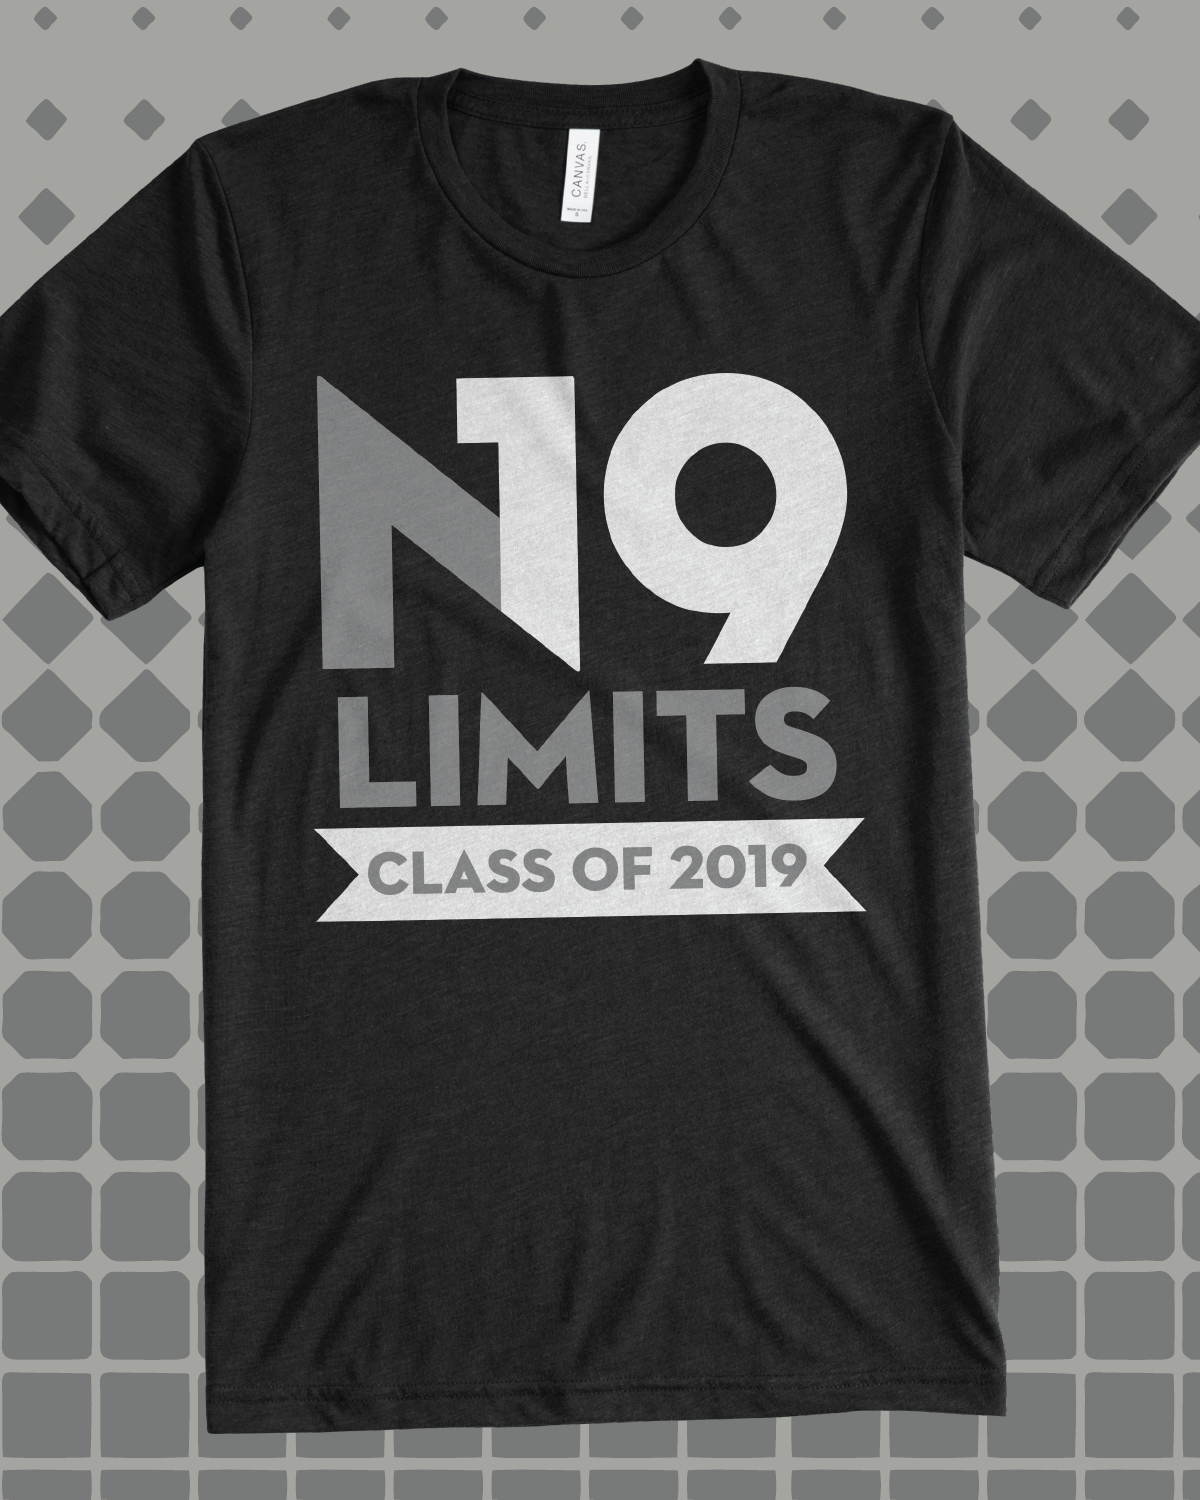 10 Lovely Senior T Shirt Ideas 2014 n19 limits class of 2019 class shirt design idea for custom shirt 2 2022